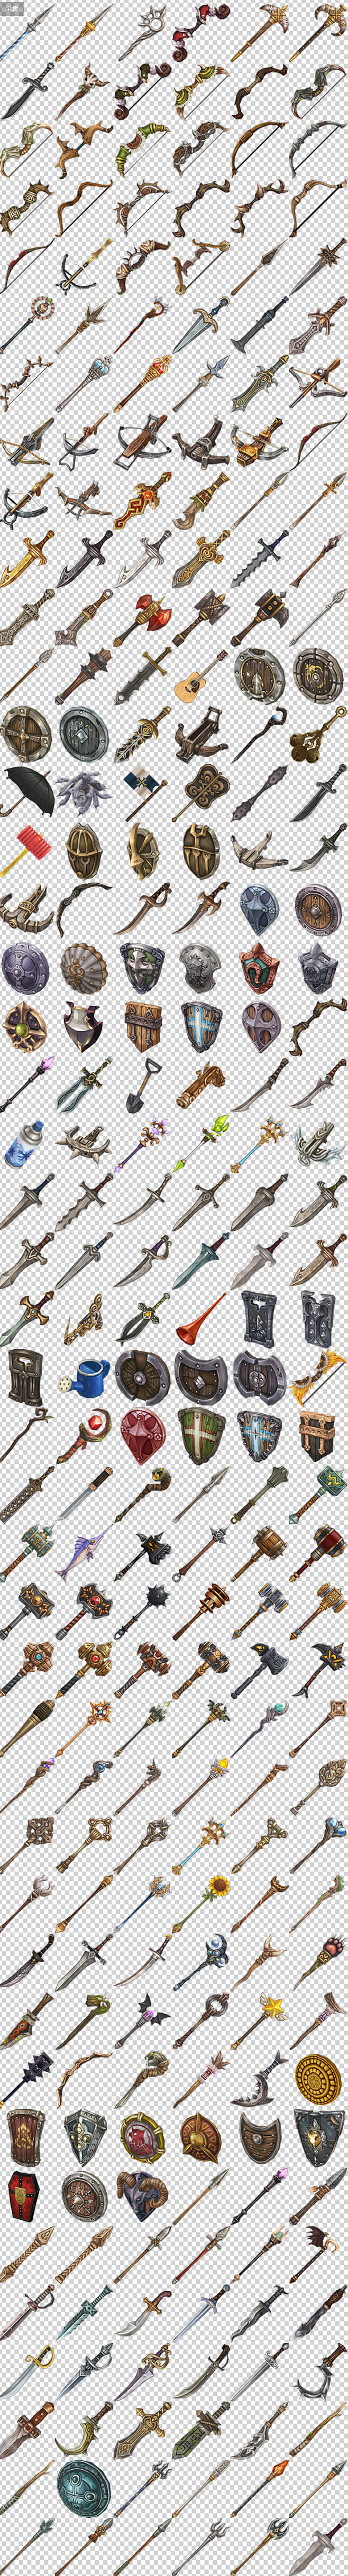 游戏美术icon 日韩游戏装备图标 武器 指环 帽子 法杖 物品图标-淘宝